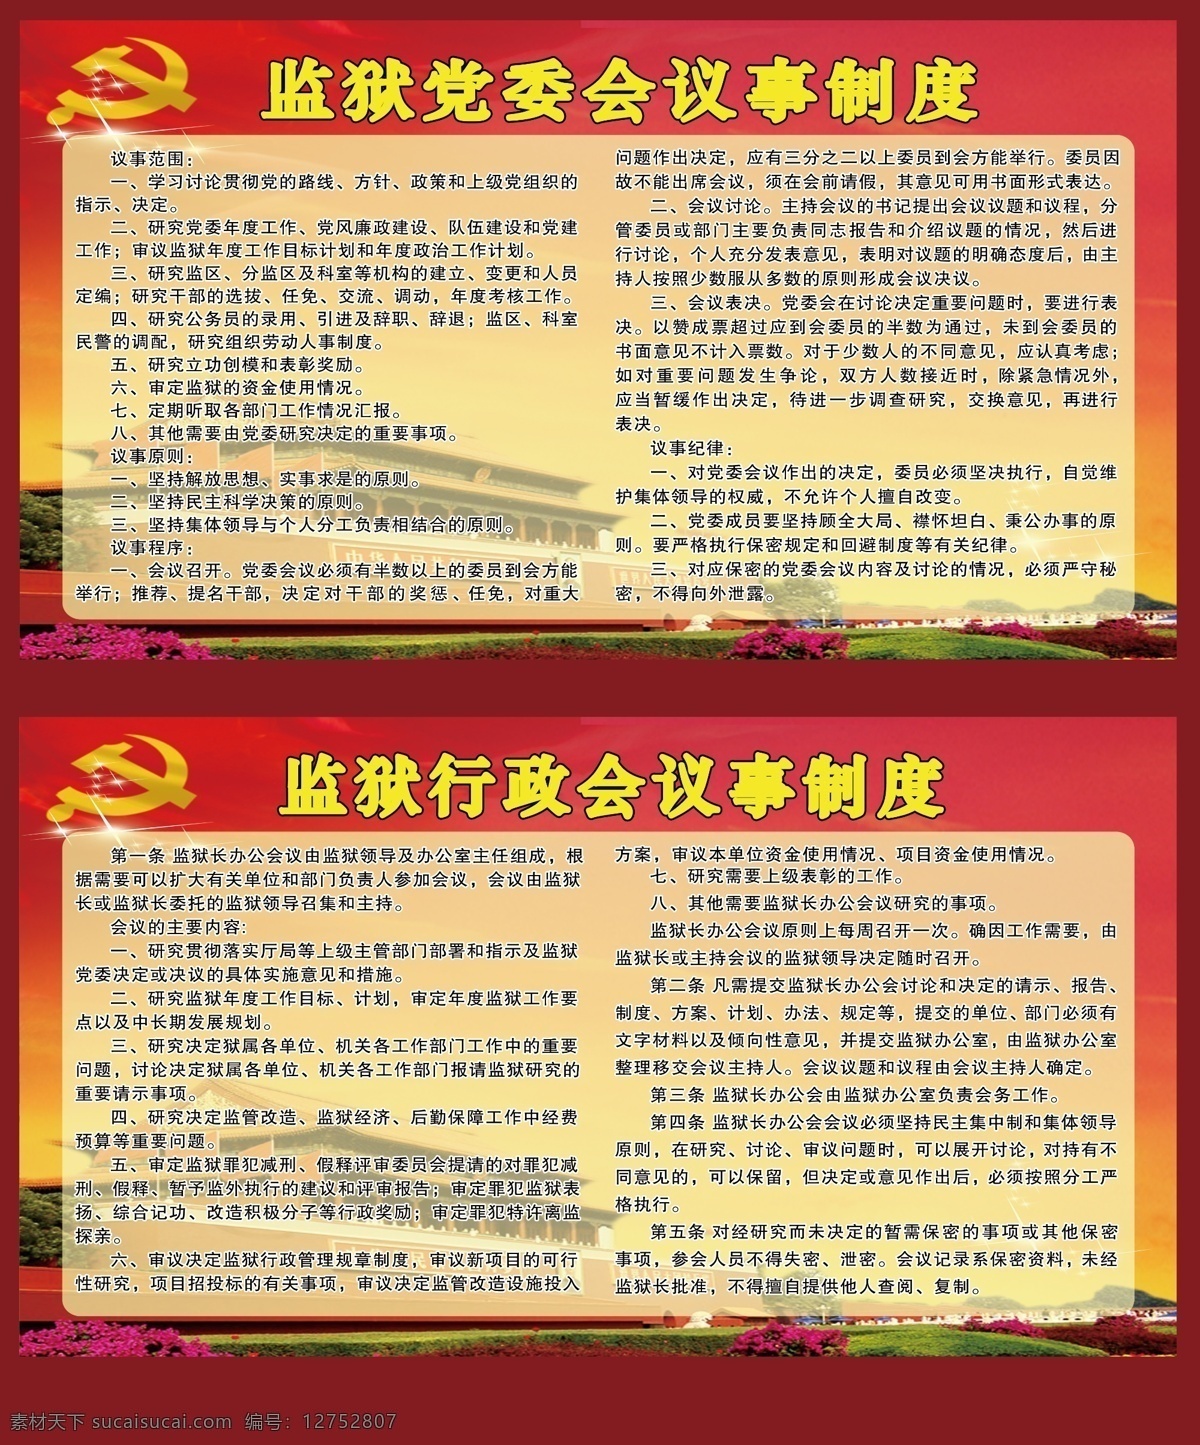 监狱 制度 宣传栏 背景图 党徽 天安门 花 宣传展板1 展板模板 黄色